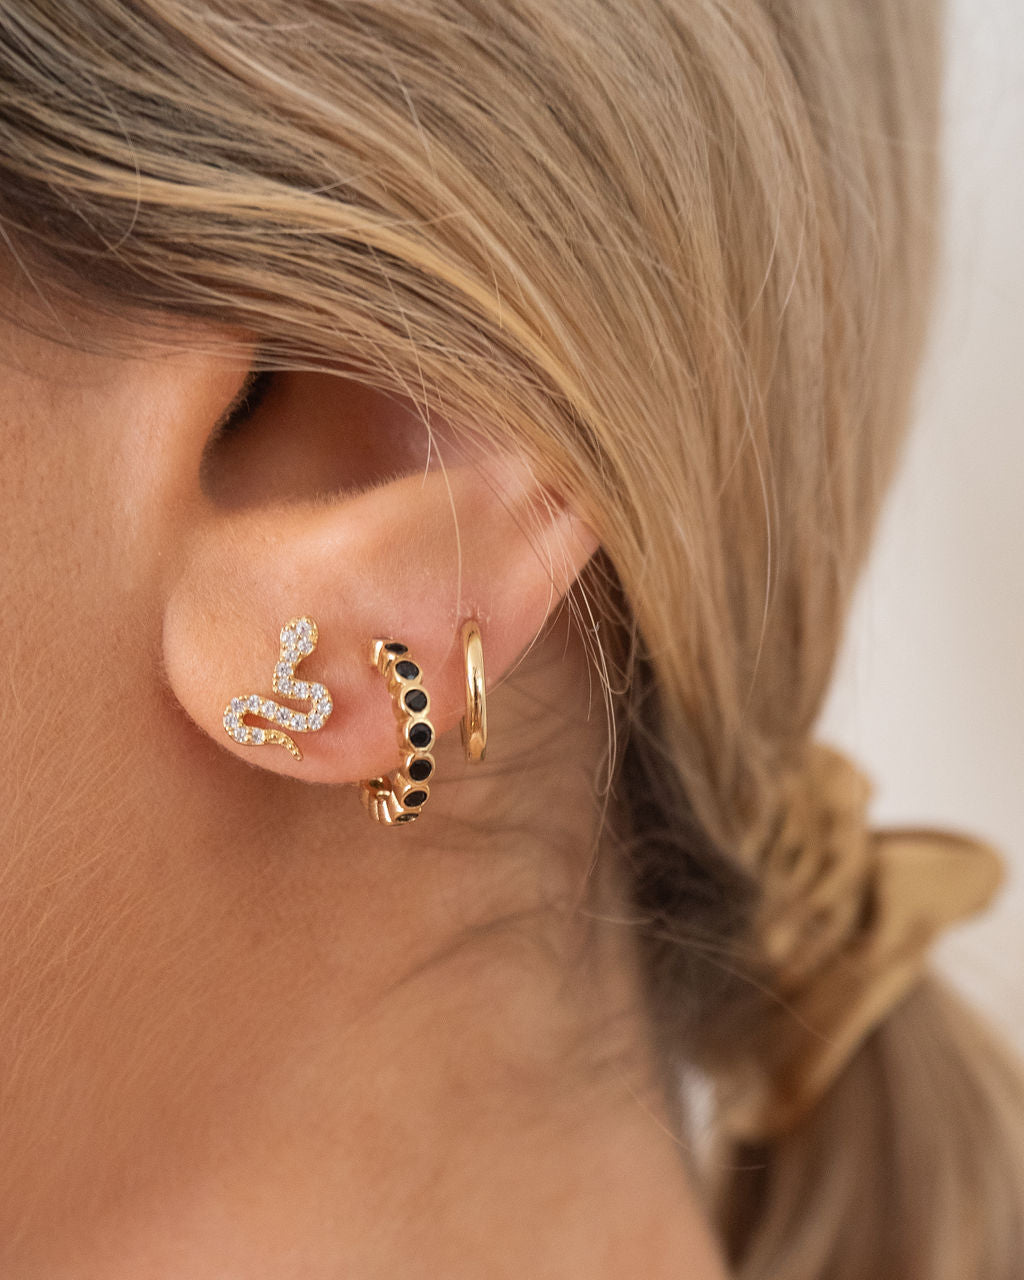 Tyler earrings